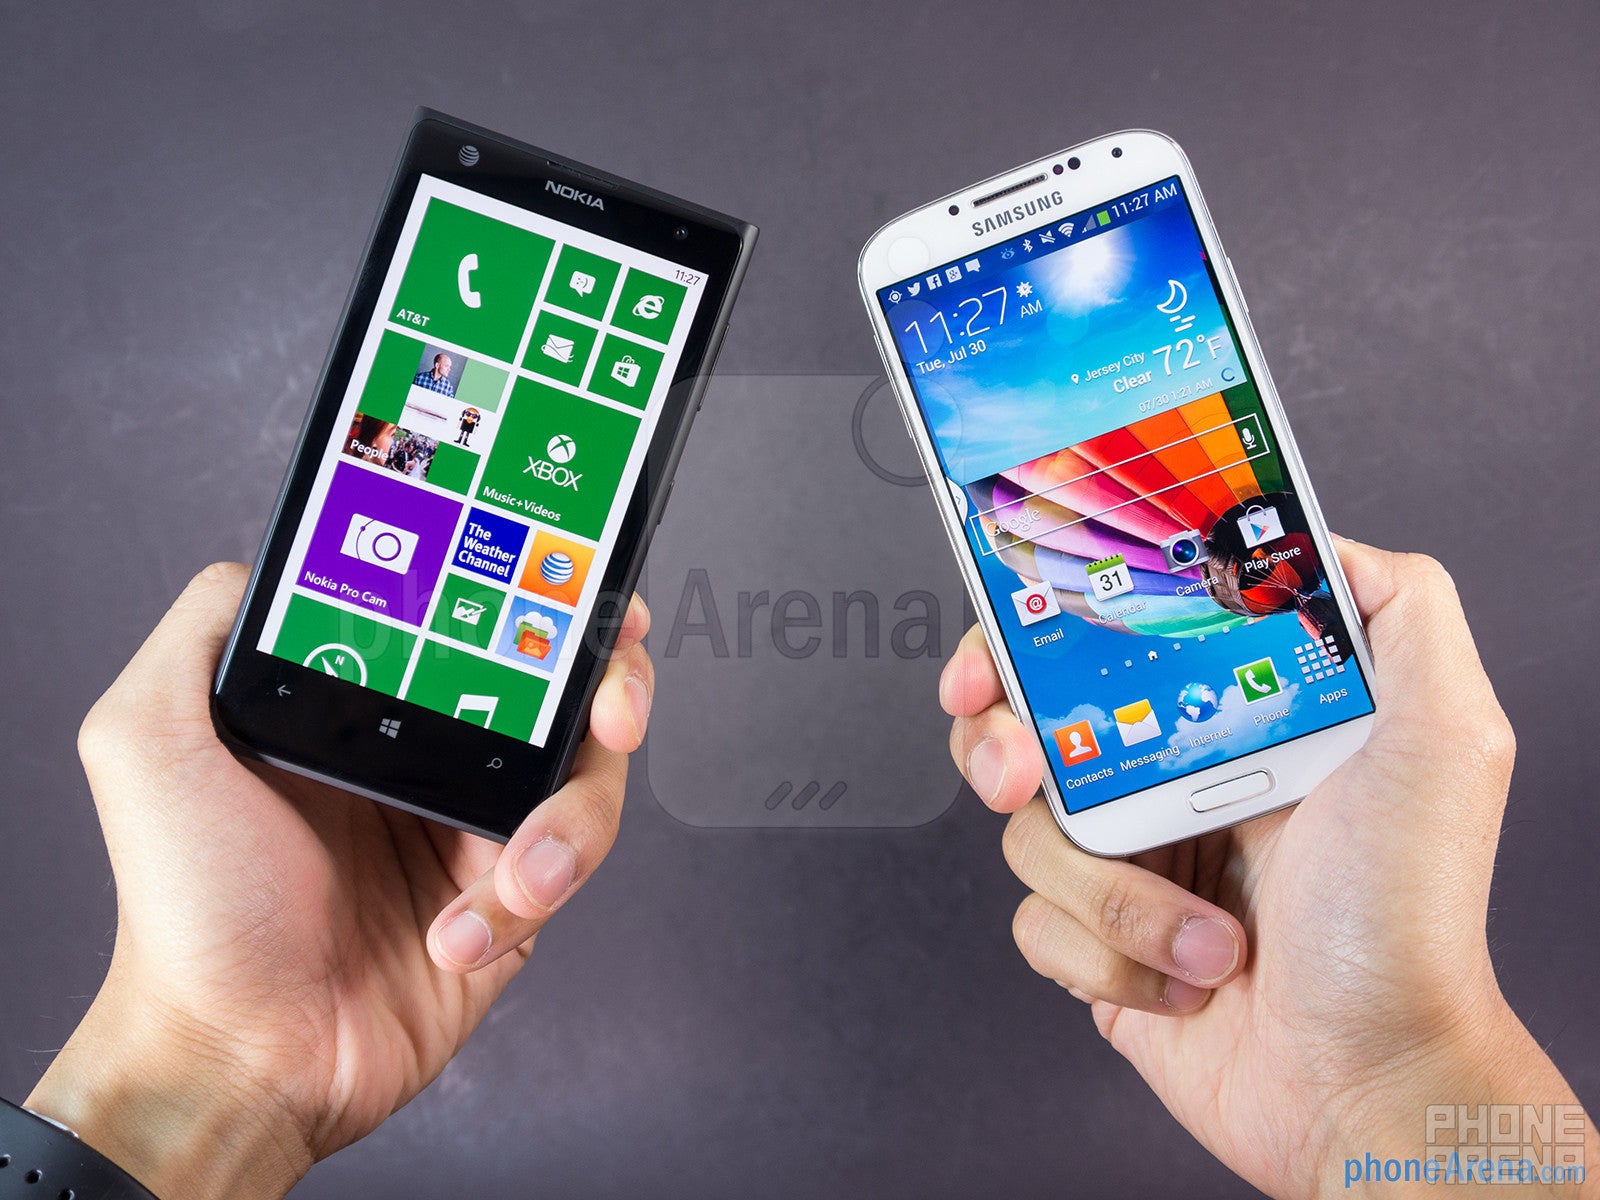 Nokia Lumia 1020 vs Samsung Galaxy S4